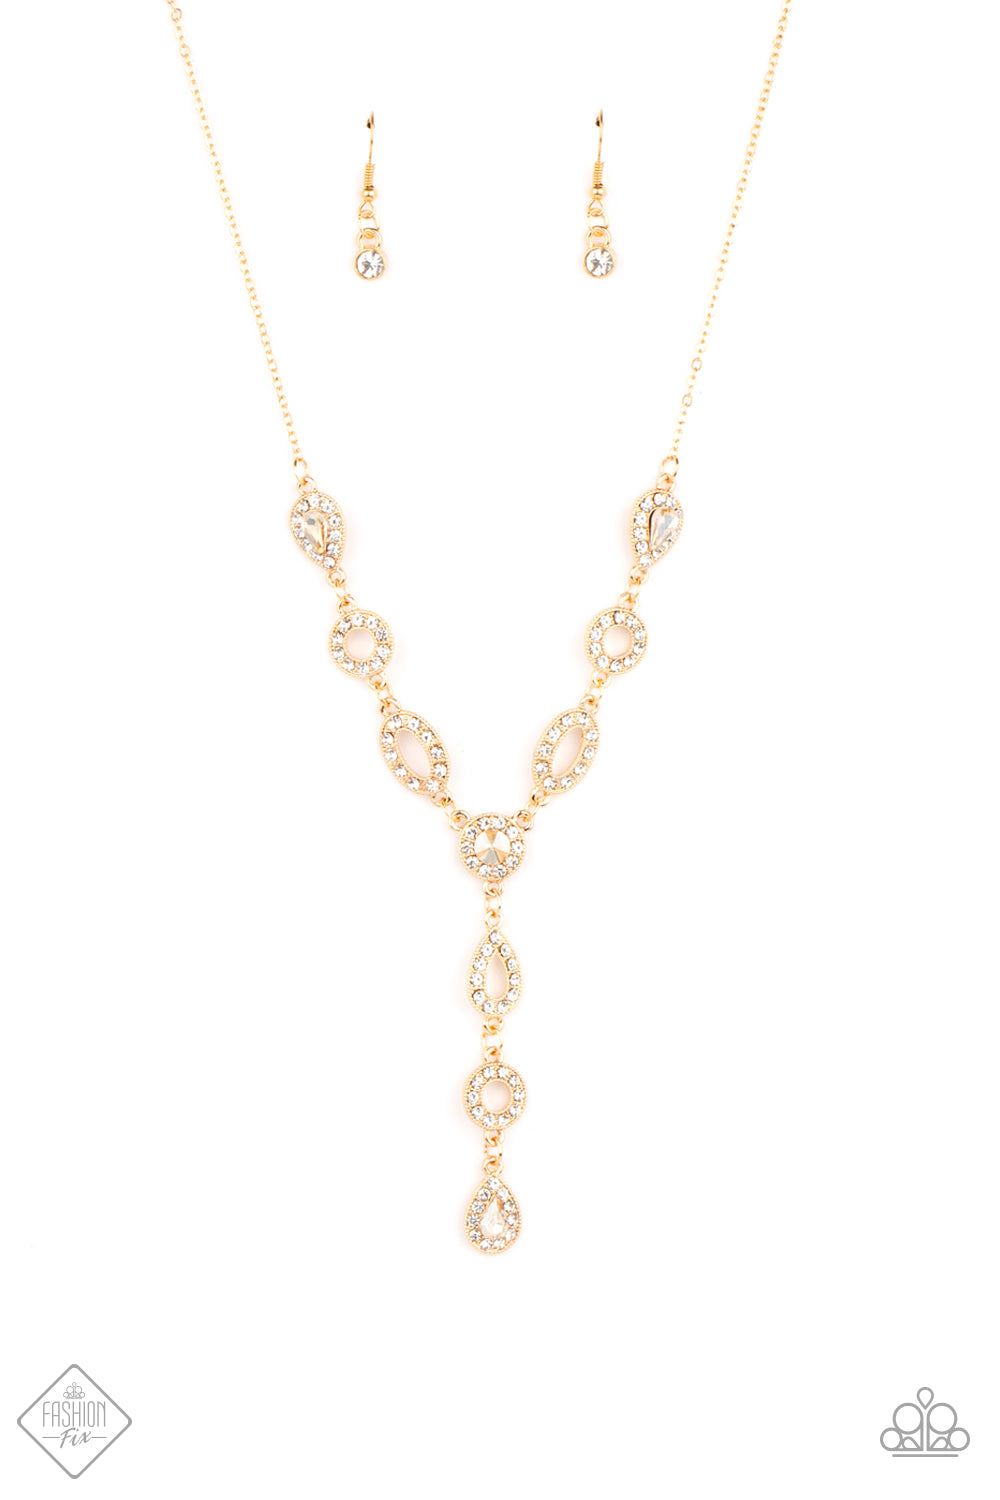 Paparazzi Royal Redux Gold Short Necklace - Fashion Fix Fiercely 5th Avenue April 2021